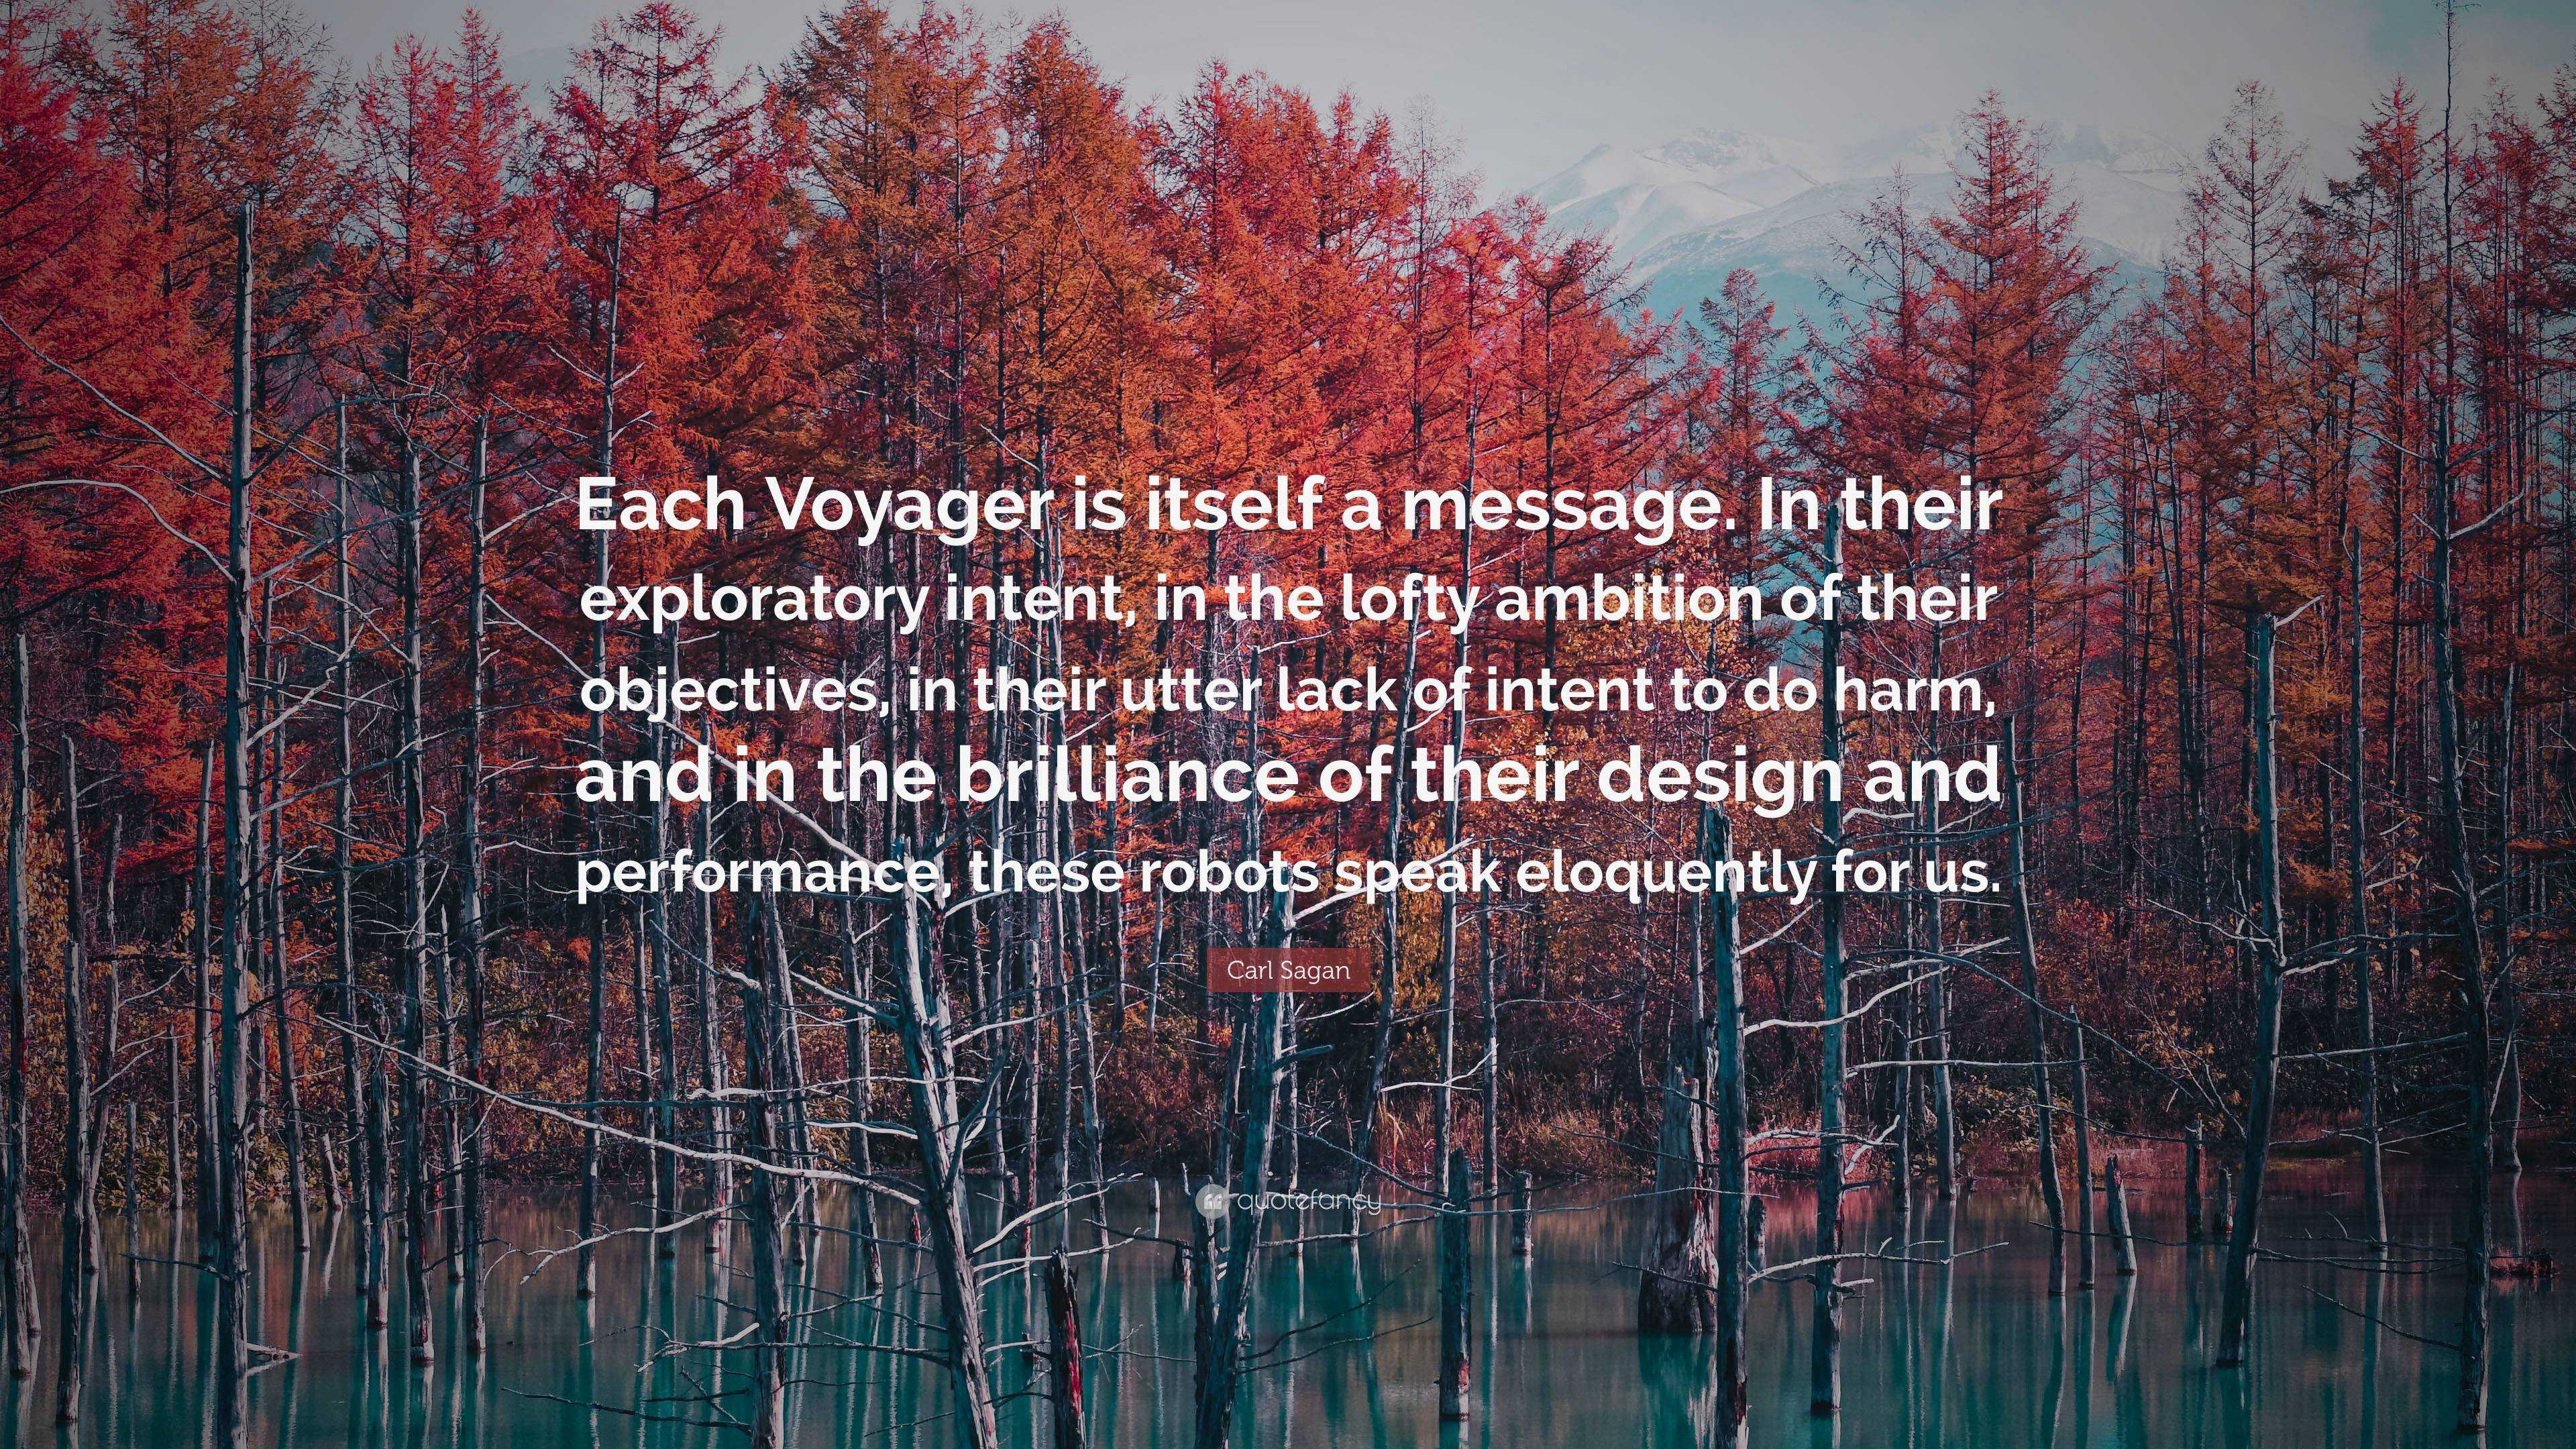 voyager message by carl sagan